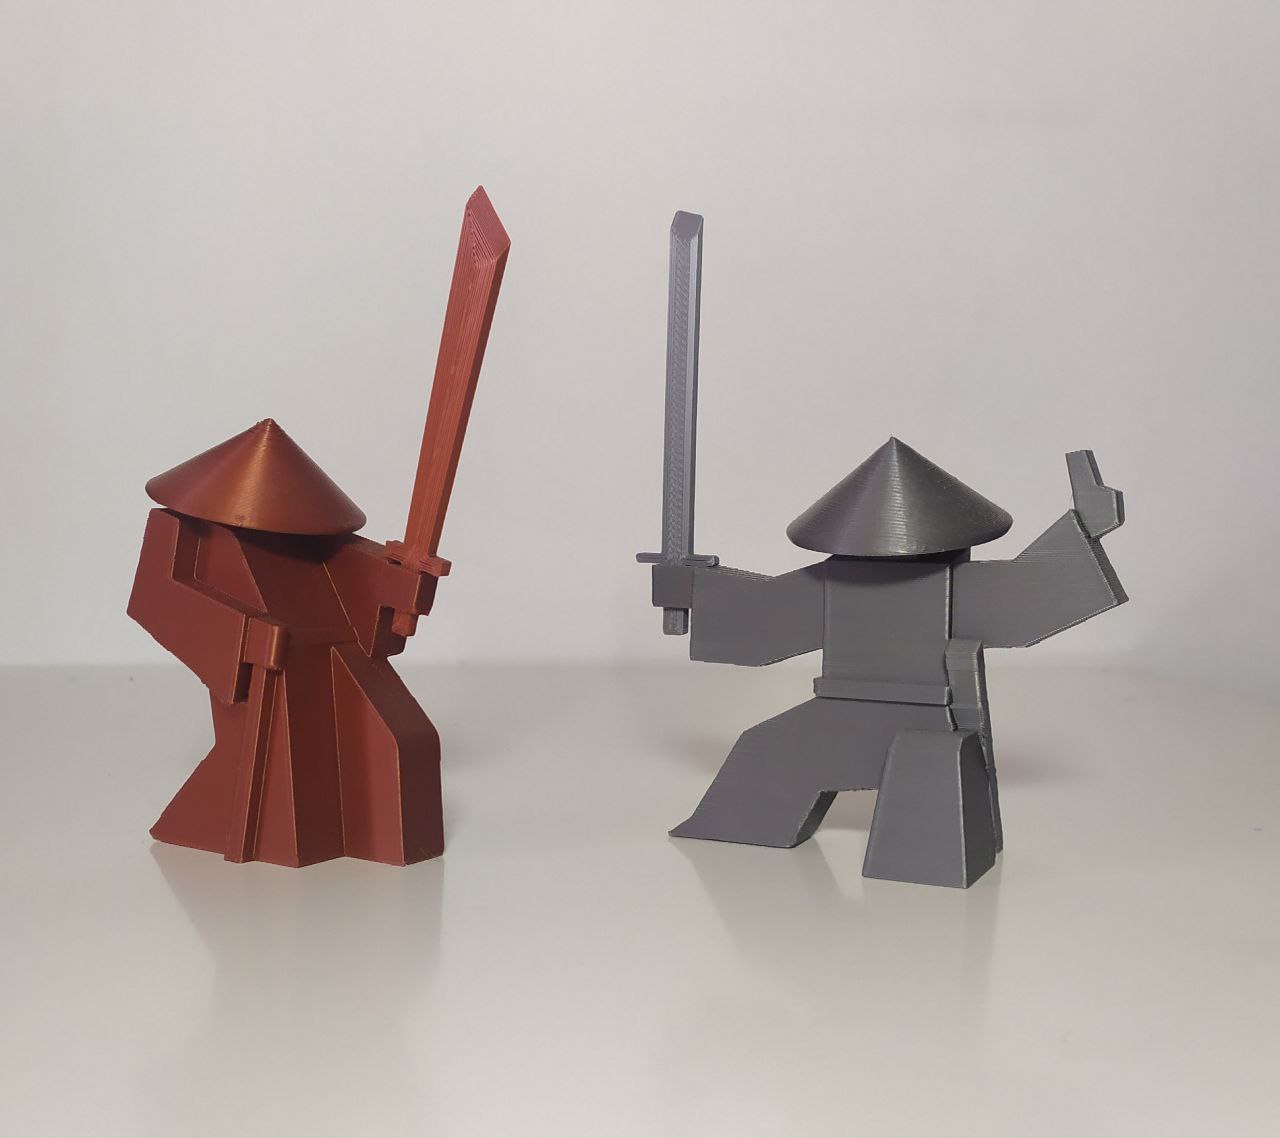 Samurai figures